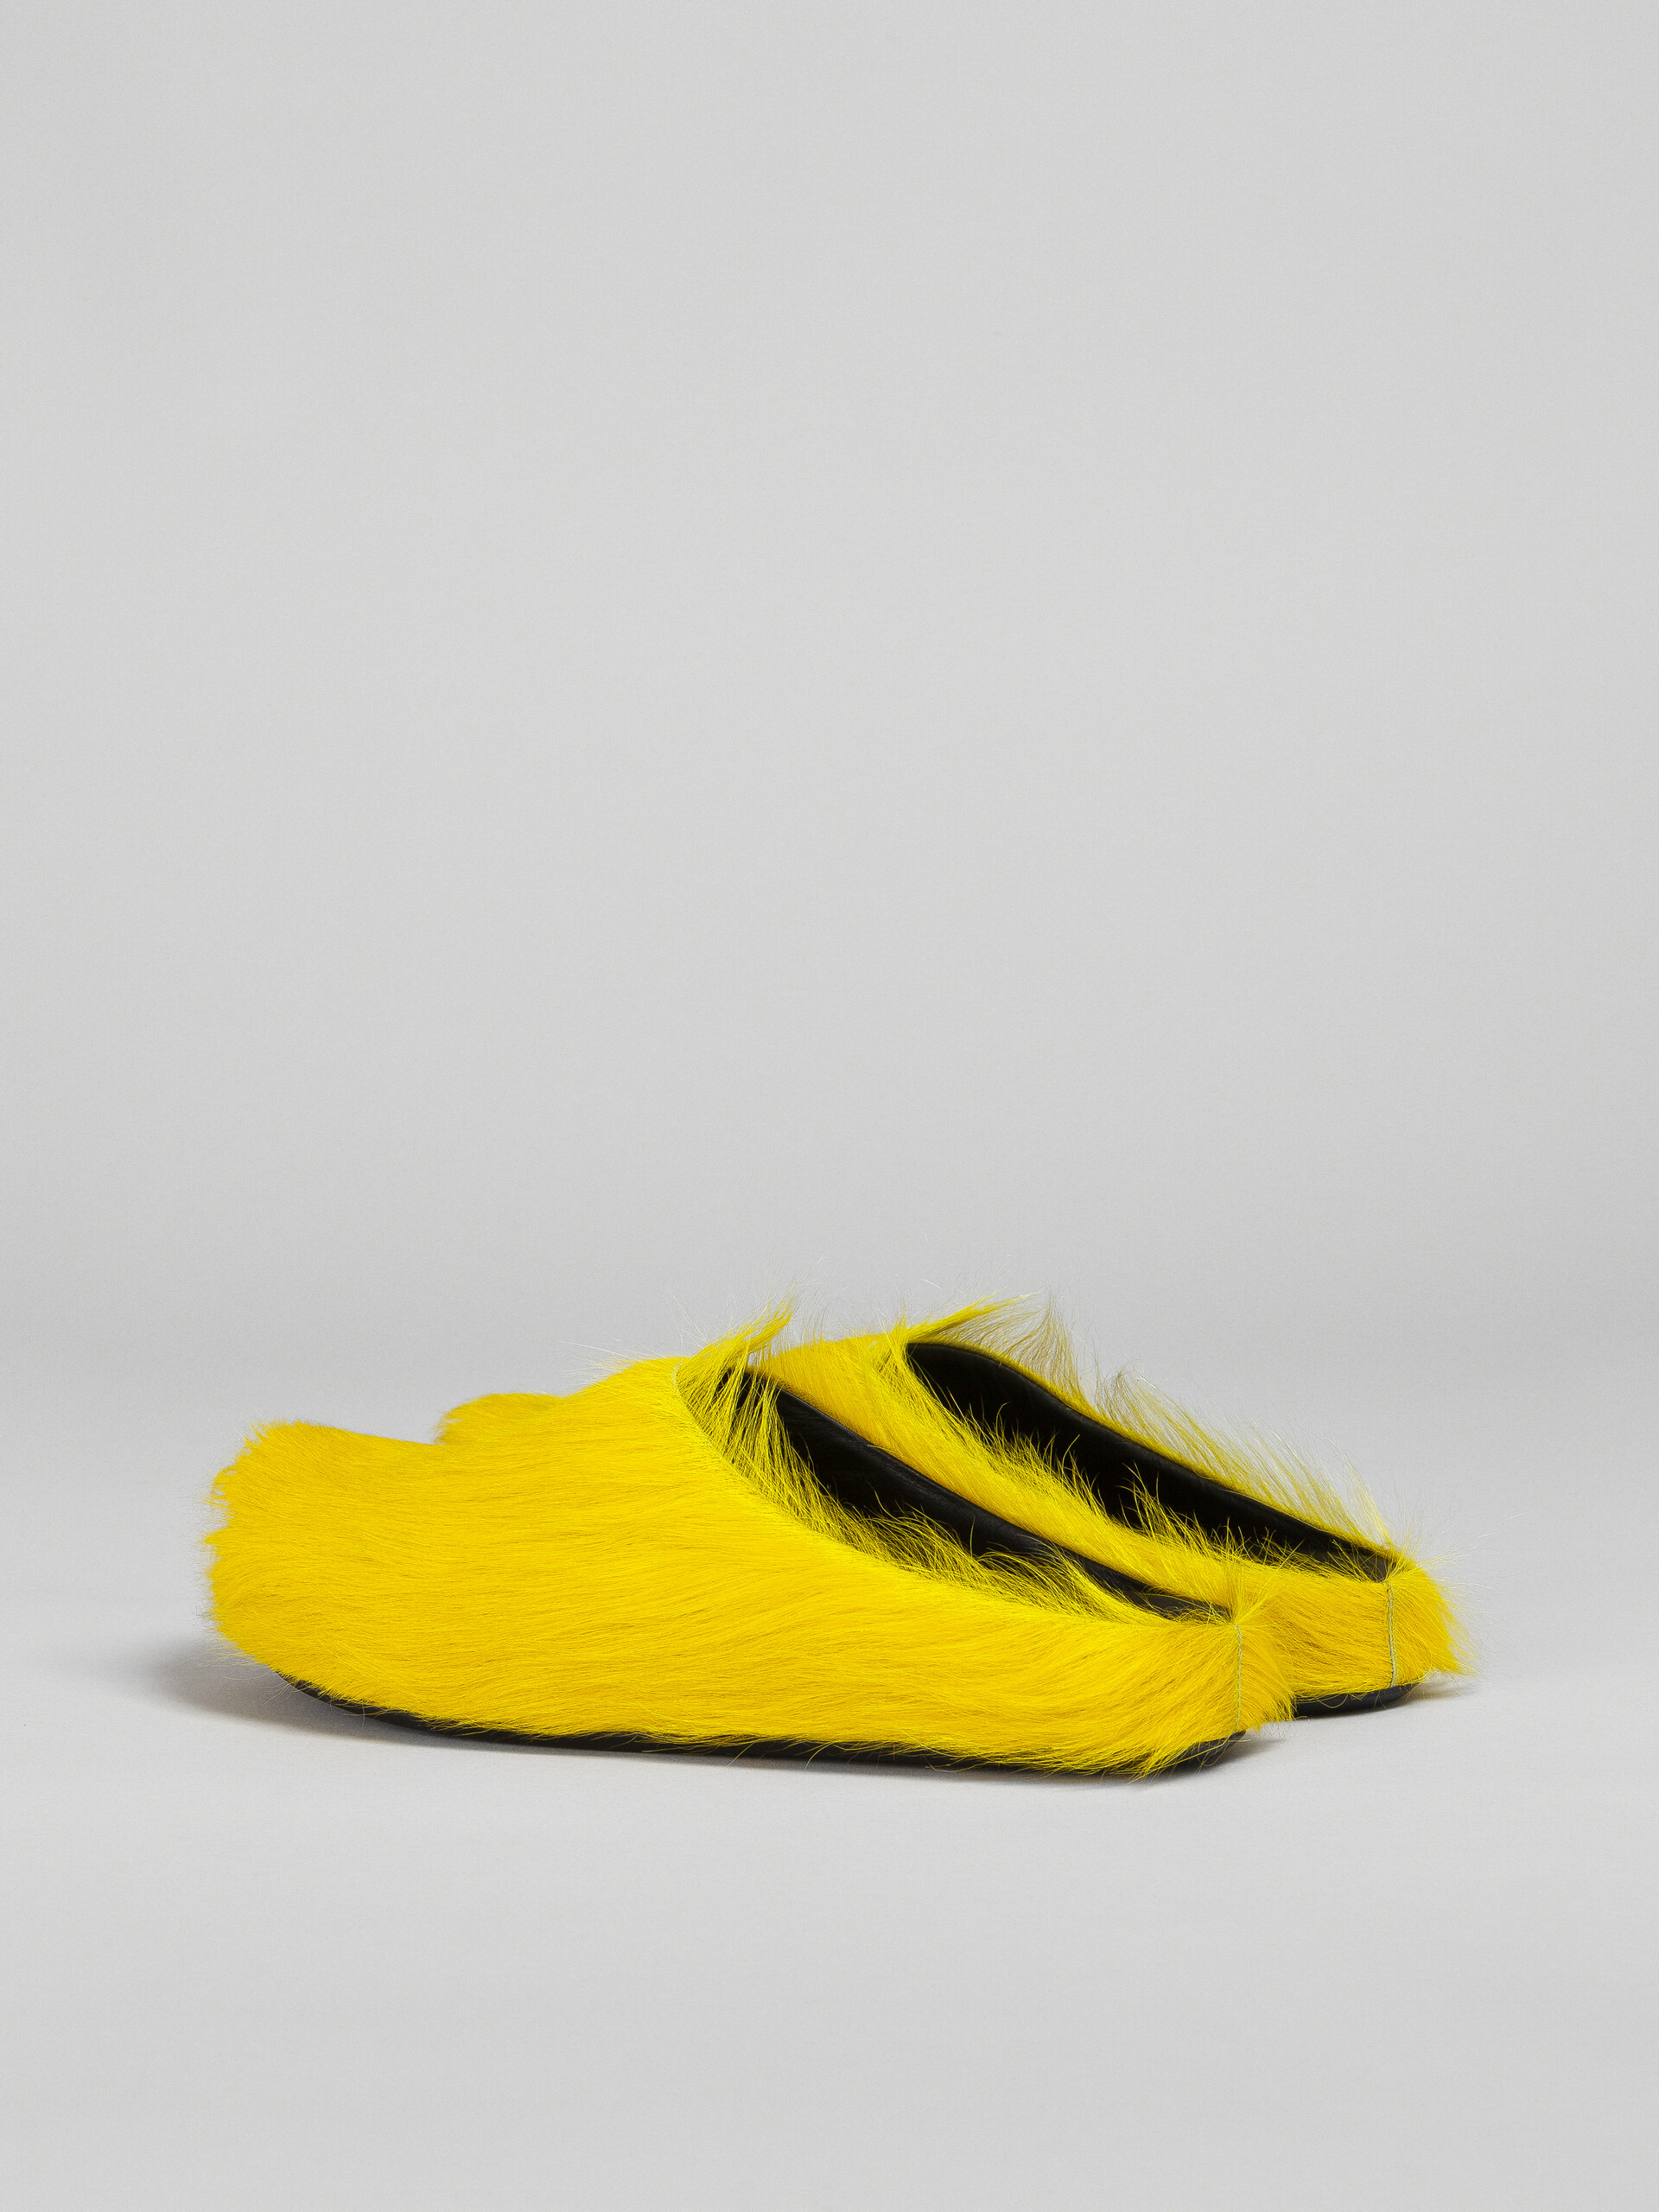 Zueco fussbett de piel amarilla con efecto pelo - Zuecos - Image 3